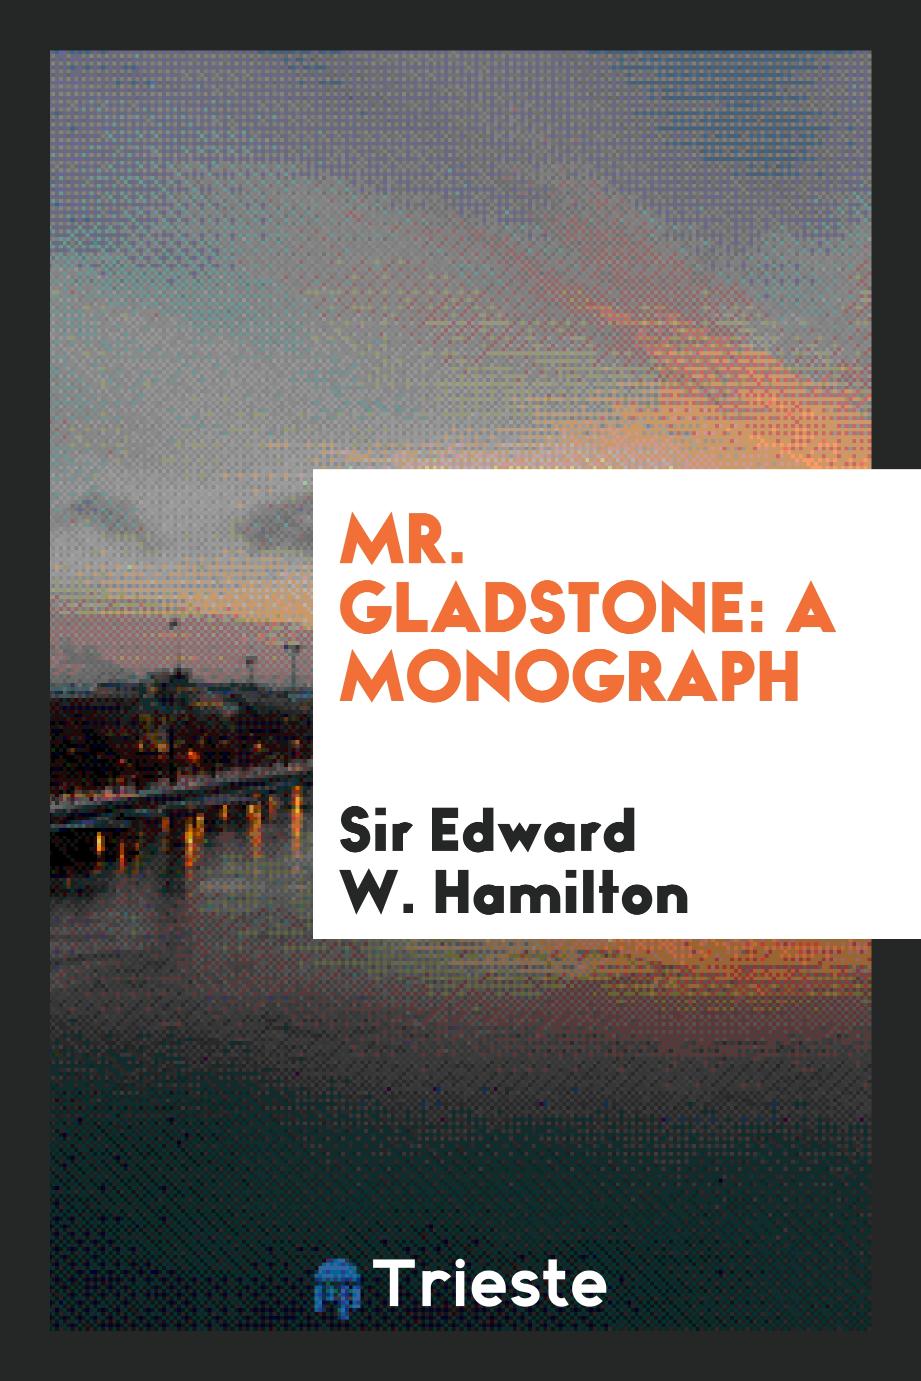 Mr. Gladstone: a monograph